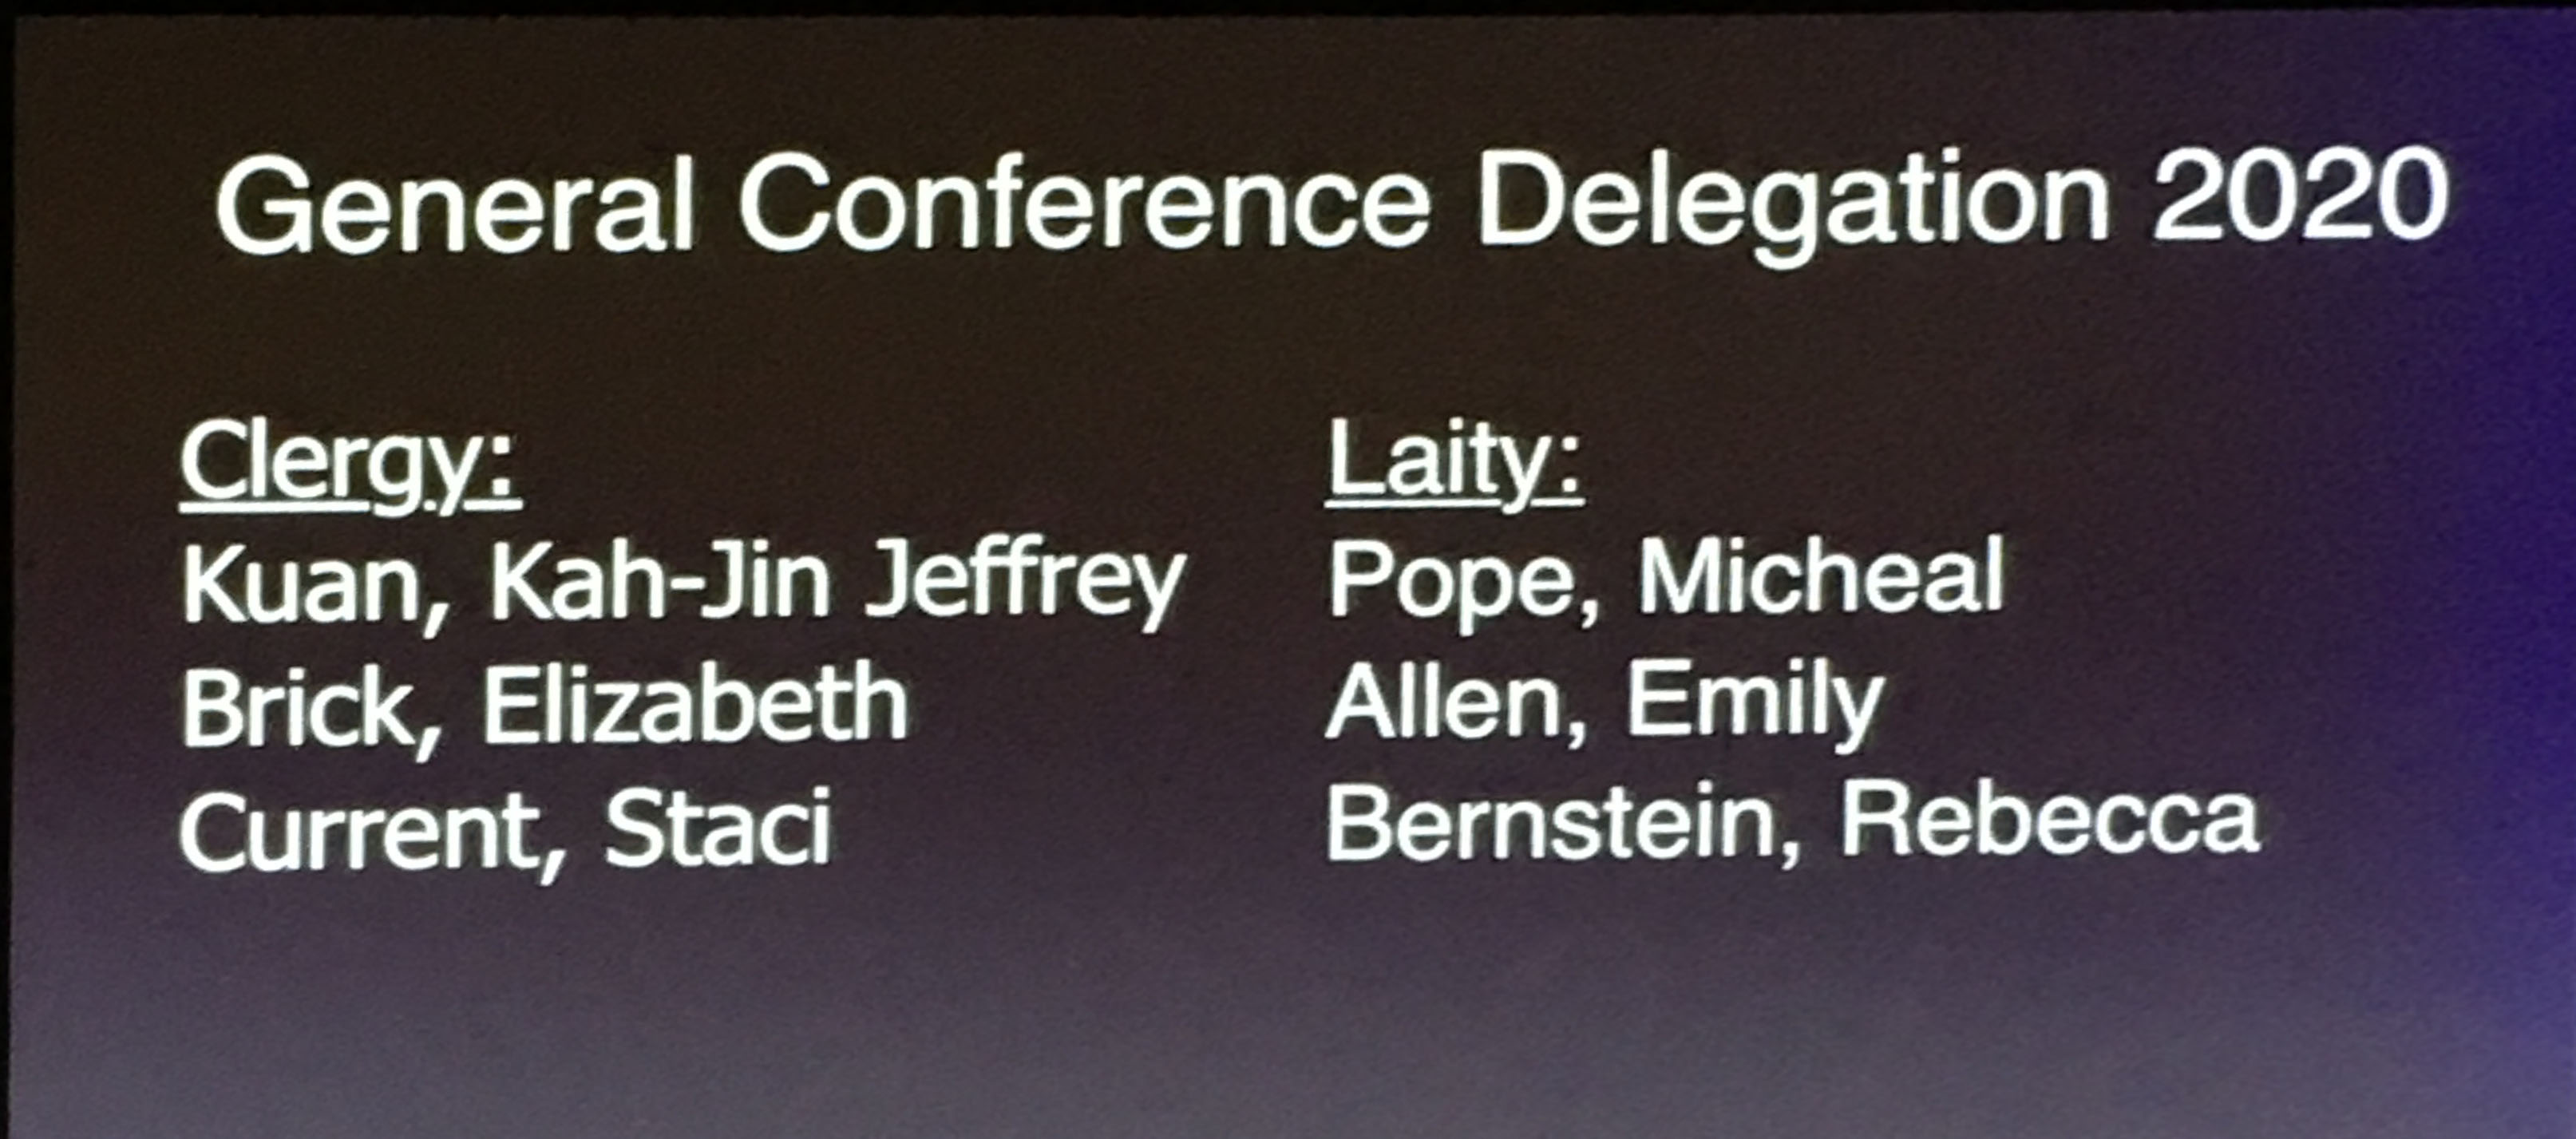 General Conference 2020 delegates